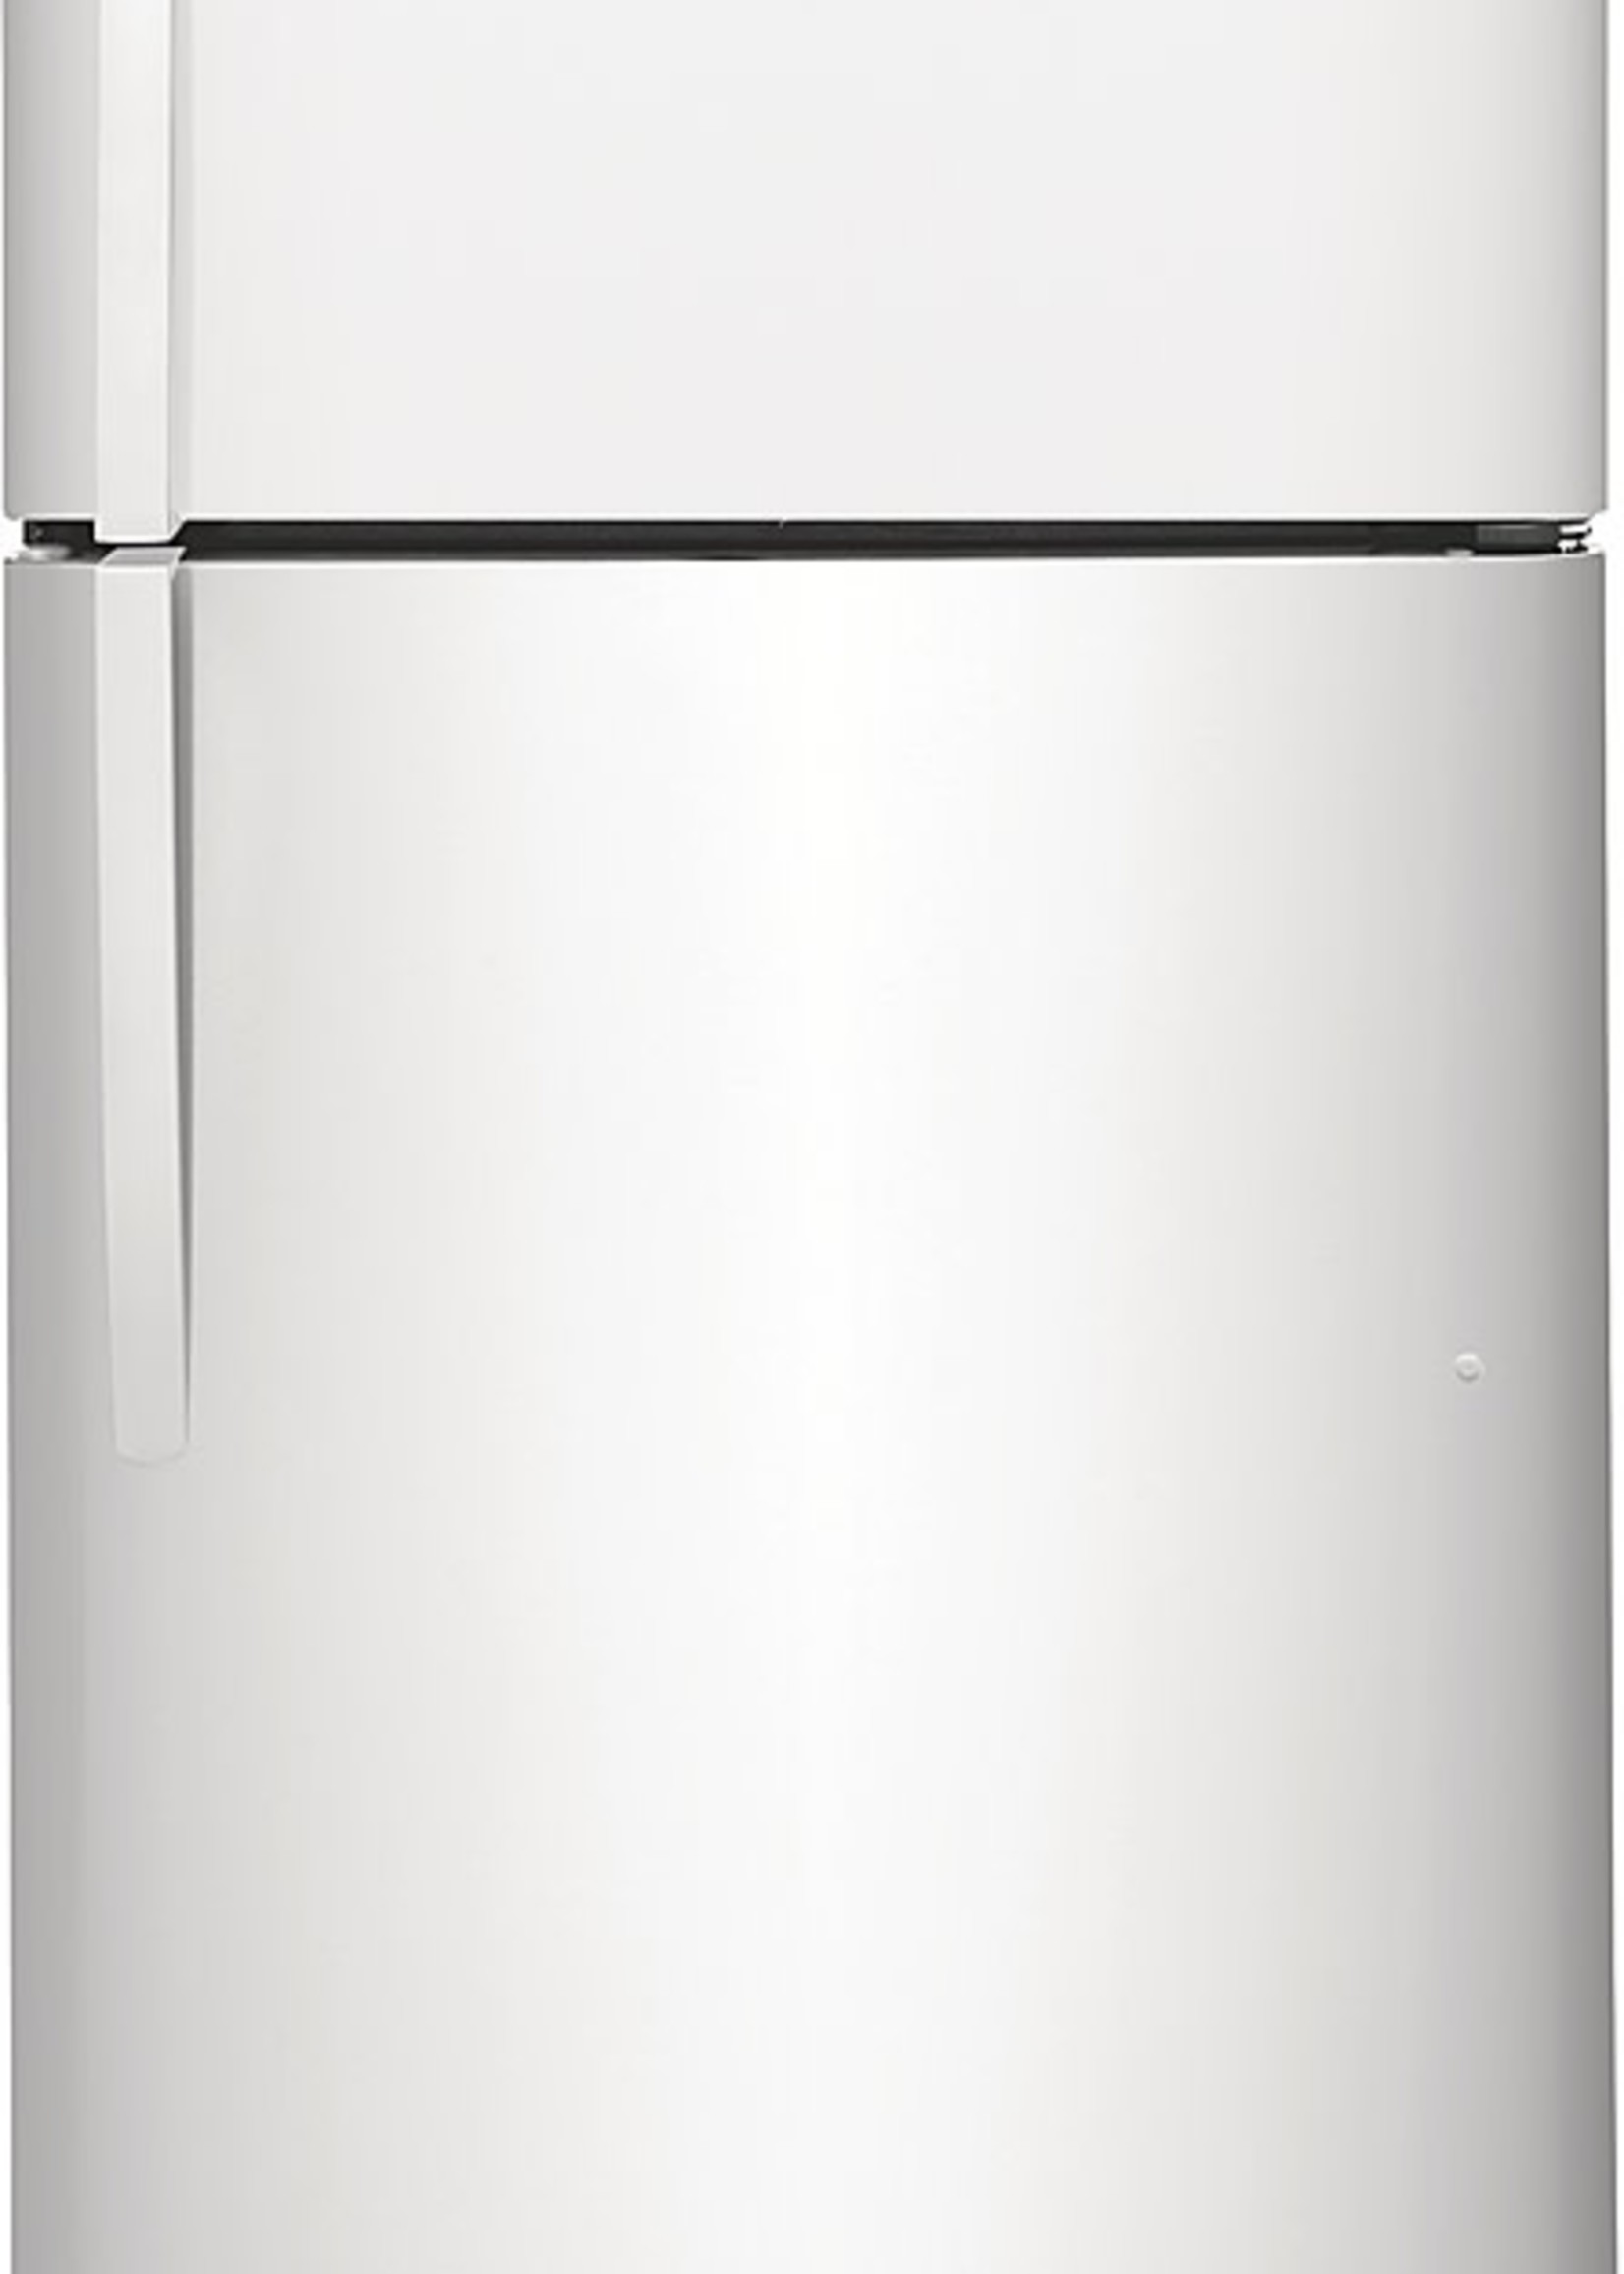 Frigidaire *Frigidaire FRTD2021AW   20.5 Cu. Ft. Top-Freezer Refrigerator - White